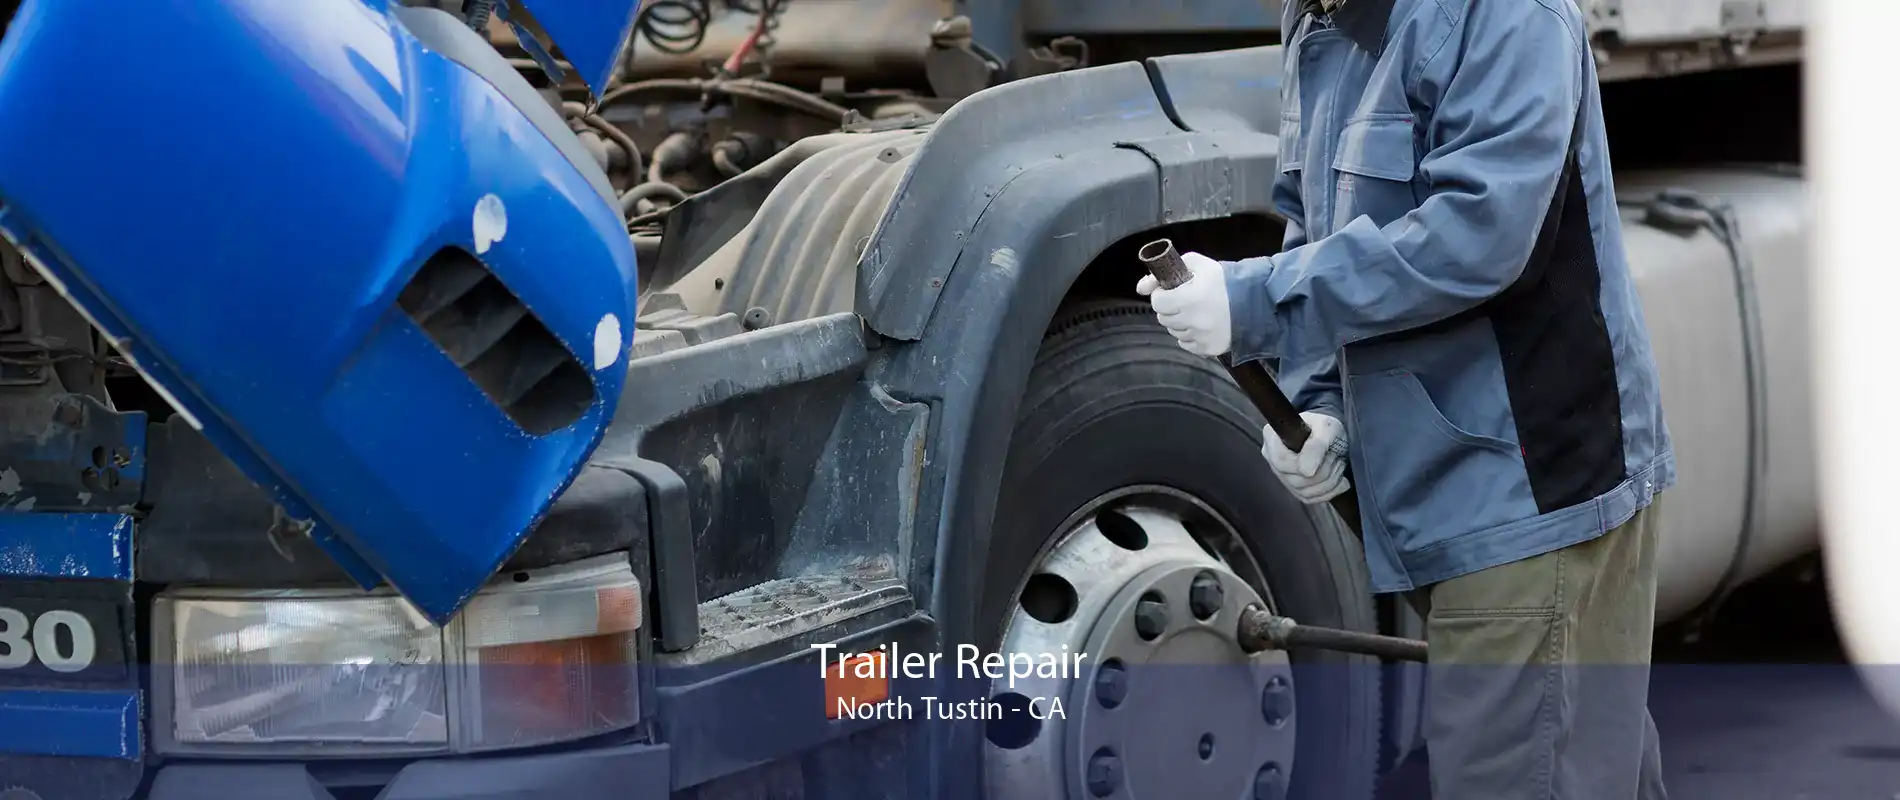 Trailer Repair North Tustin - CA